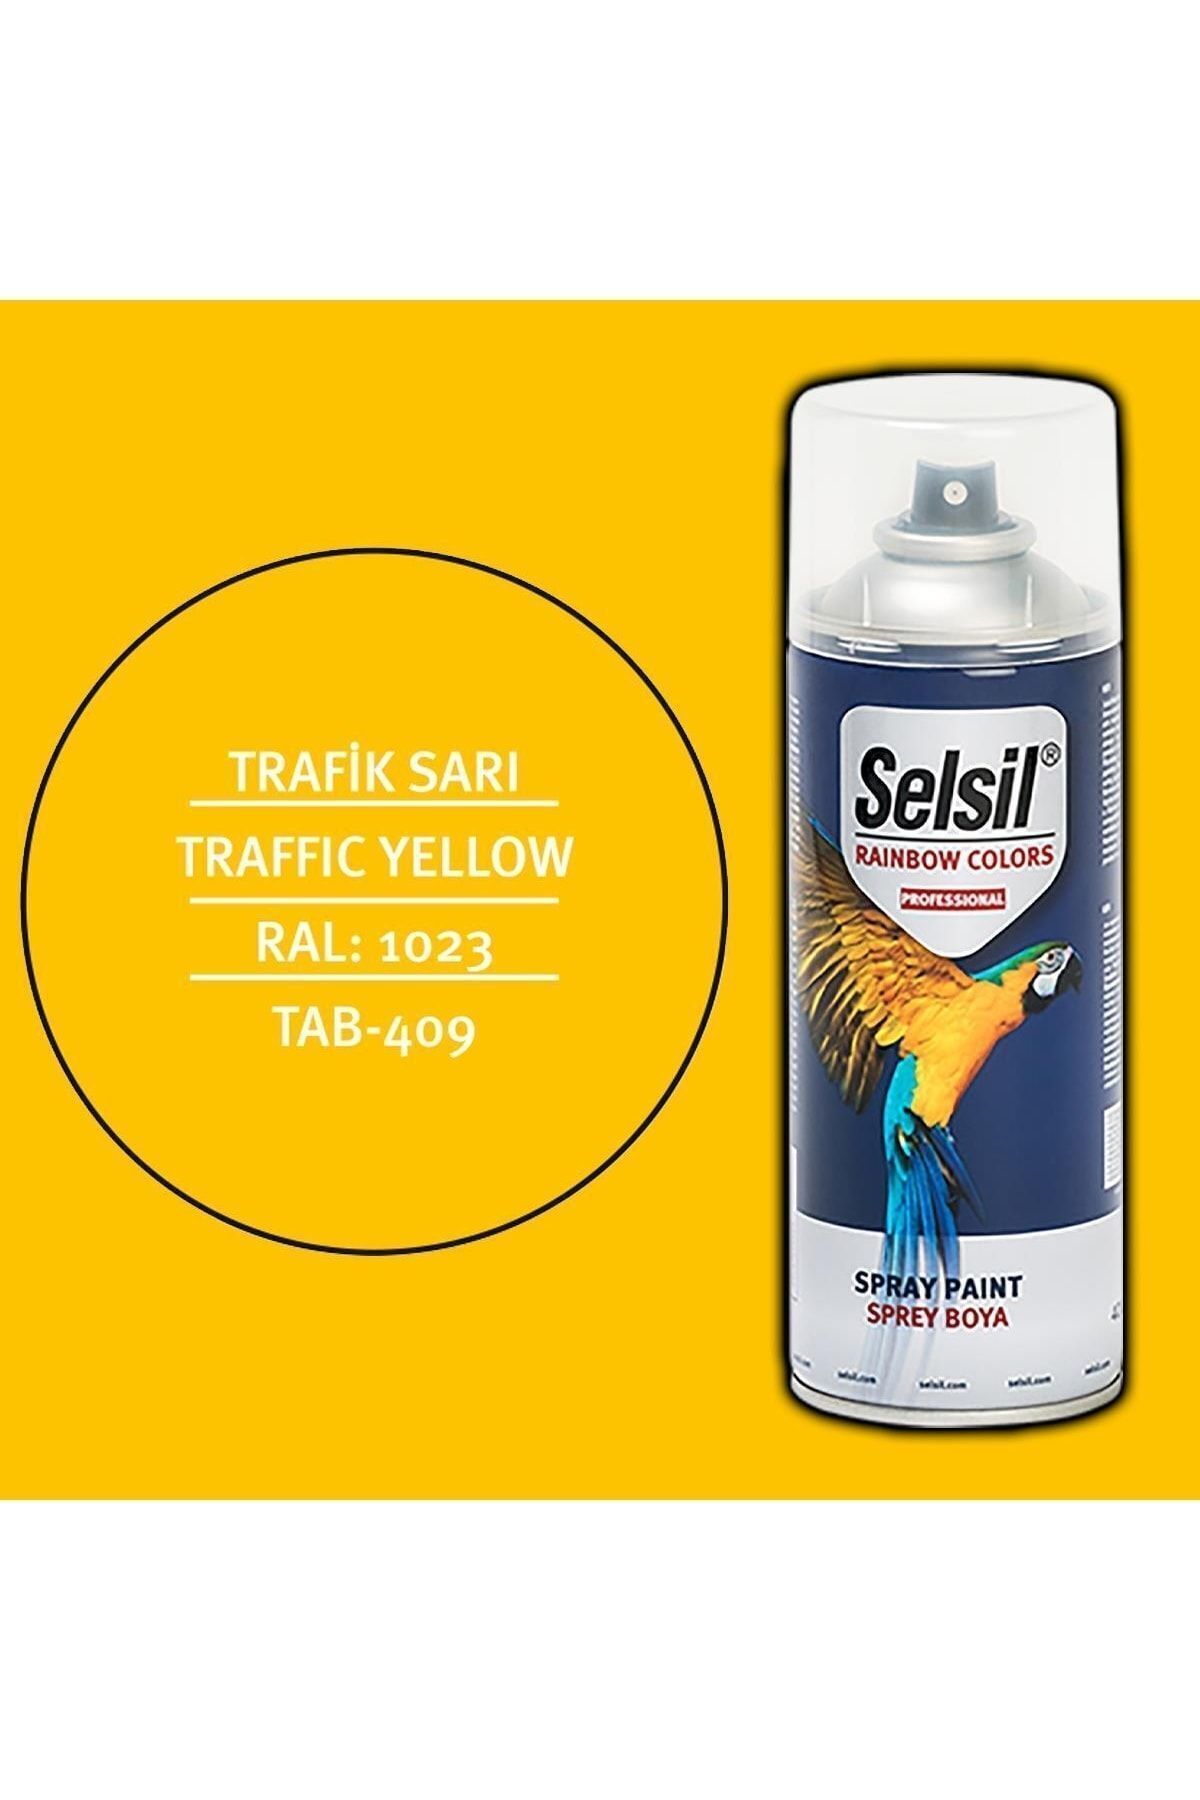 Selsil Rainbow Sprey Boya 400ml (trafik Sarı - Traffic Yellow)